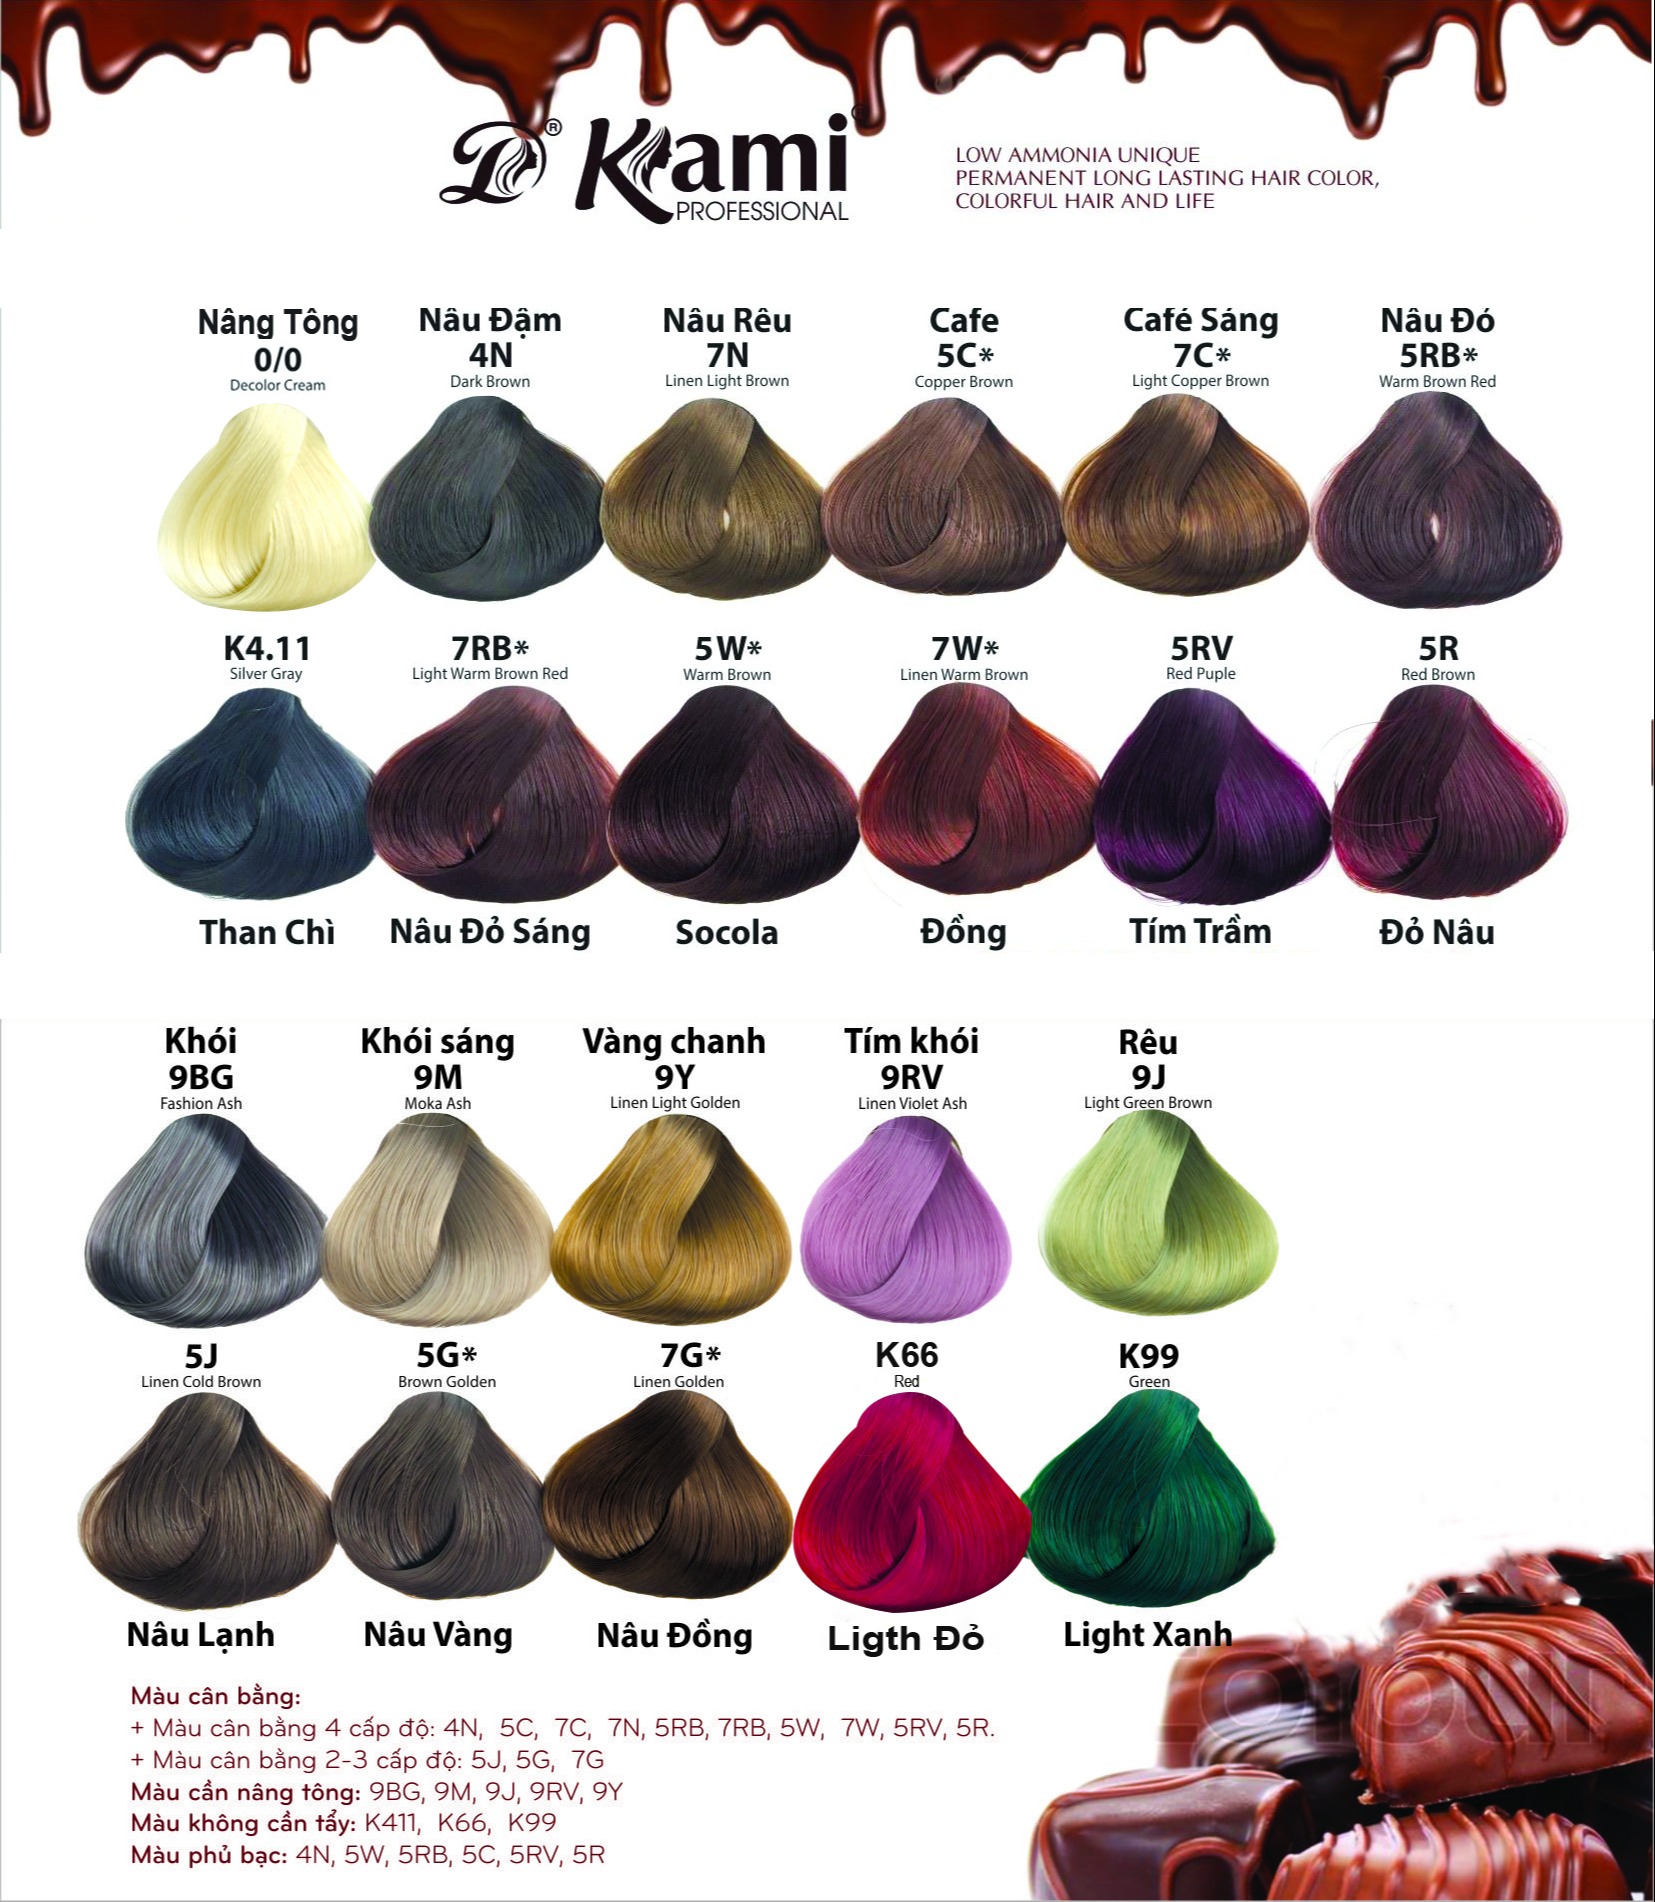 Chương trình giảm giá cho thuốc nhuộm tóc Kami là sự kiện đáng mong đợi của bất cứ ai muốn thay đổi kiểu tóc. Nhưng liệu bạn có biết lịch sử giá của sản phẩm này là như thế nào? Hãy khám phá sự thông minh trong cách định giá của Kami và nhận ra tại sao sản phẩm này làm hài lòng hàng triệu khách hàng.